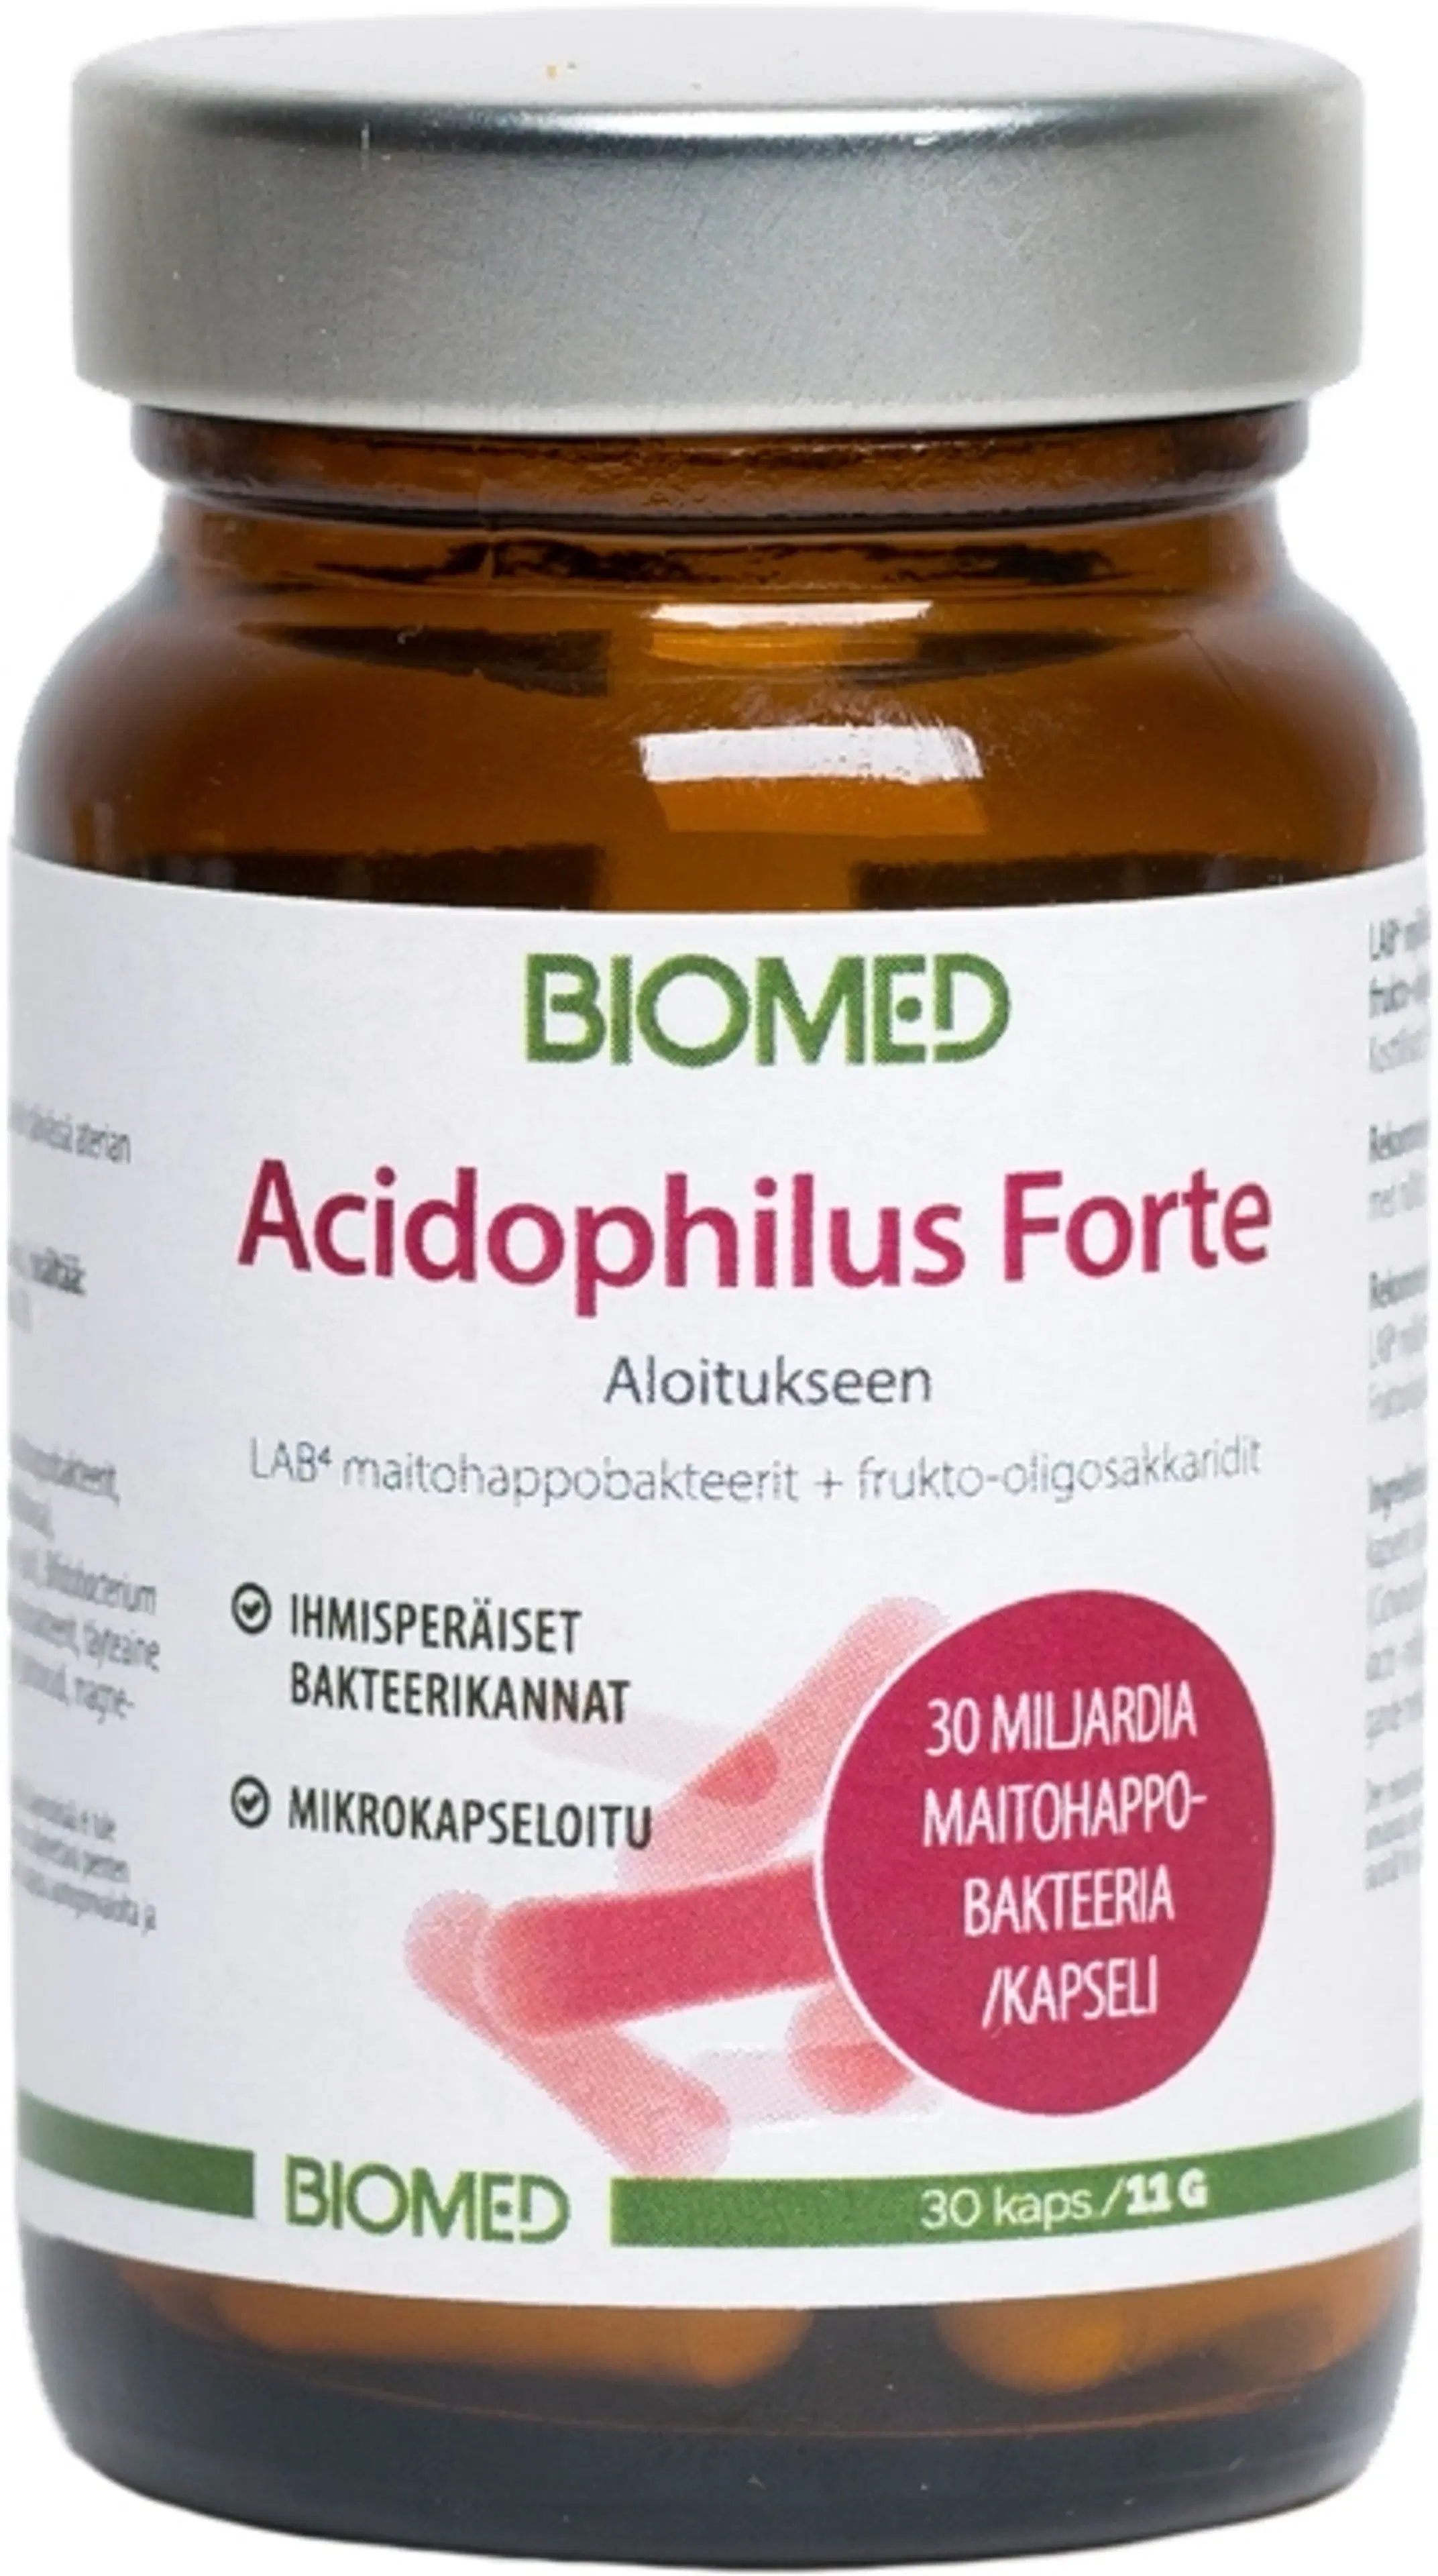 Biomed Acidophilus Forte Lab4 maitohappobakteerit 30 kaps.